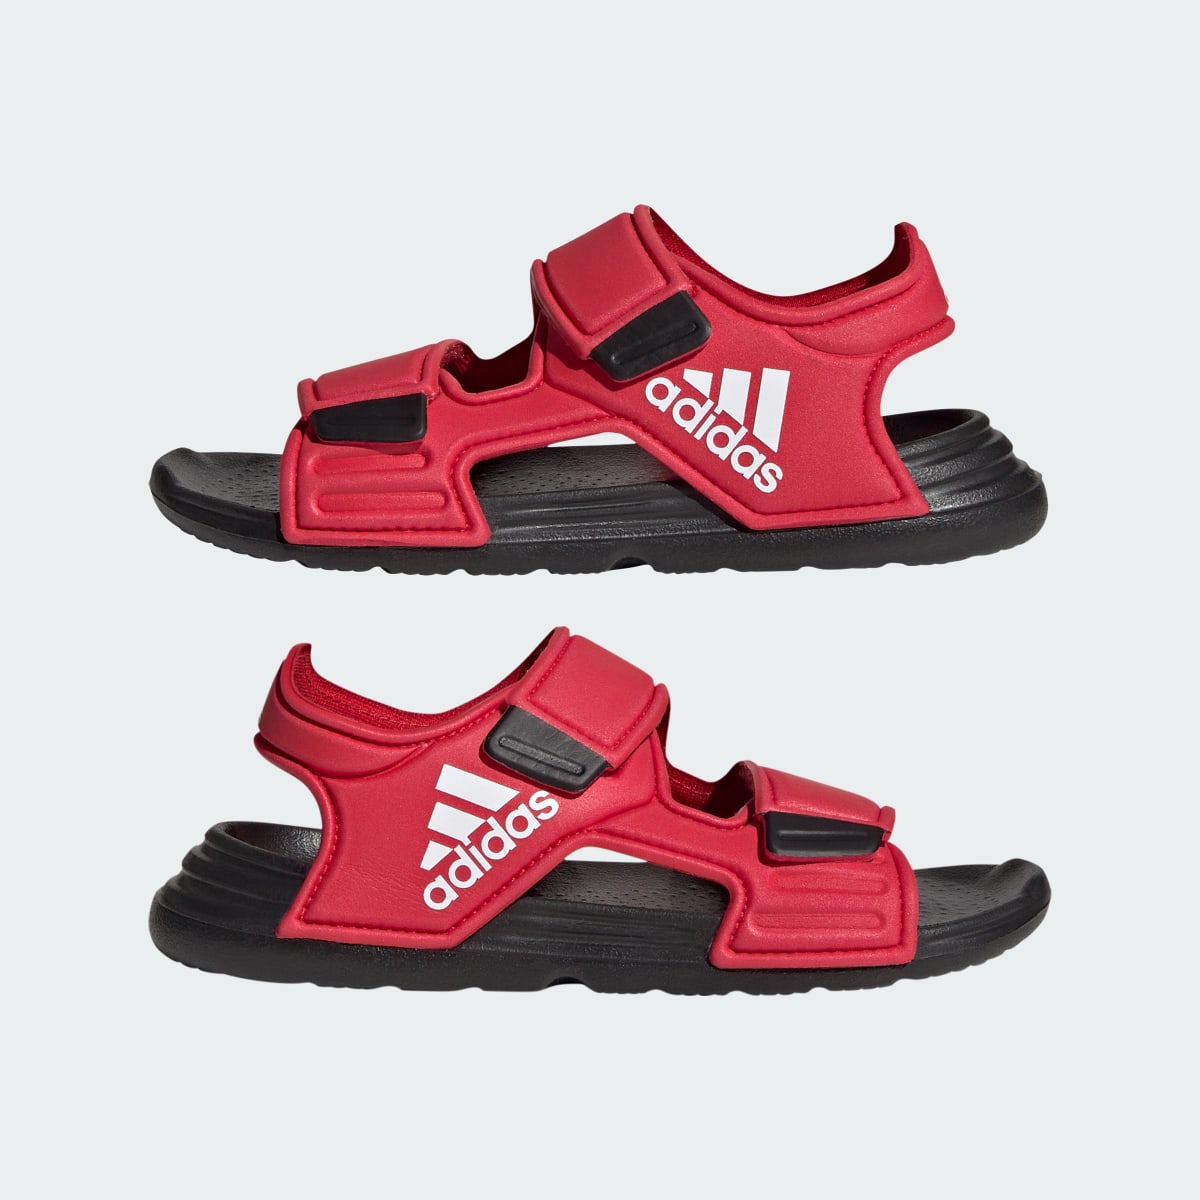 Adidas Altaswim Sandals. 8